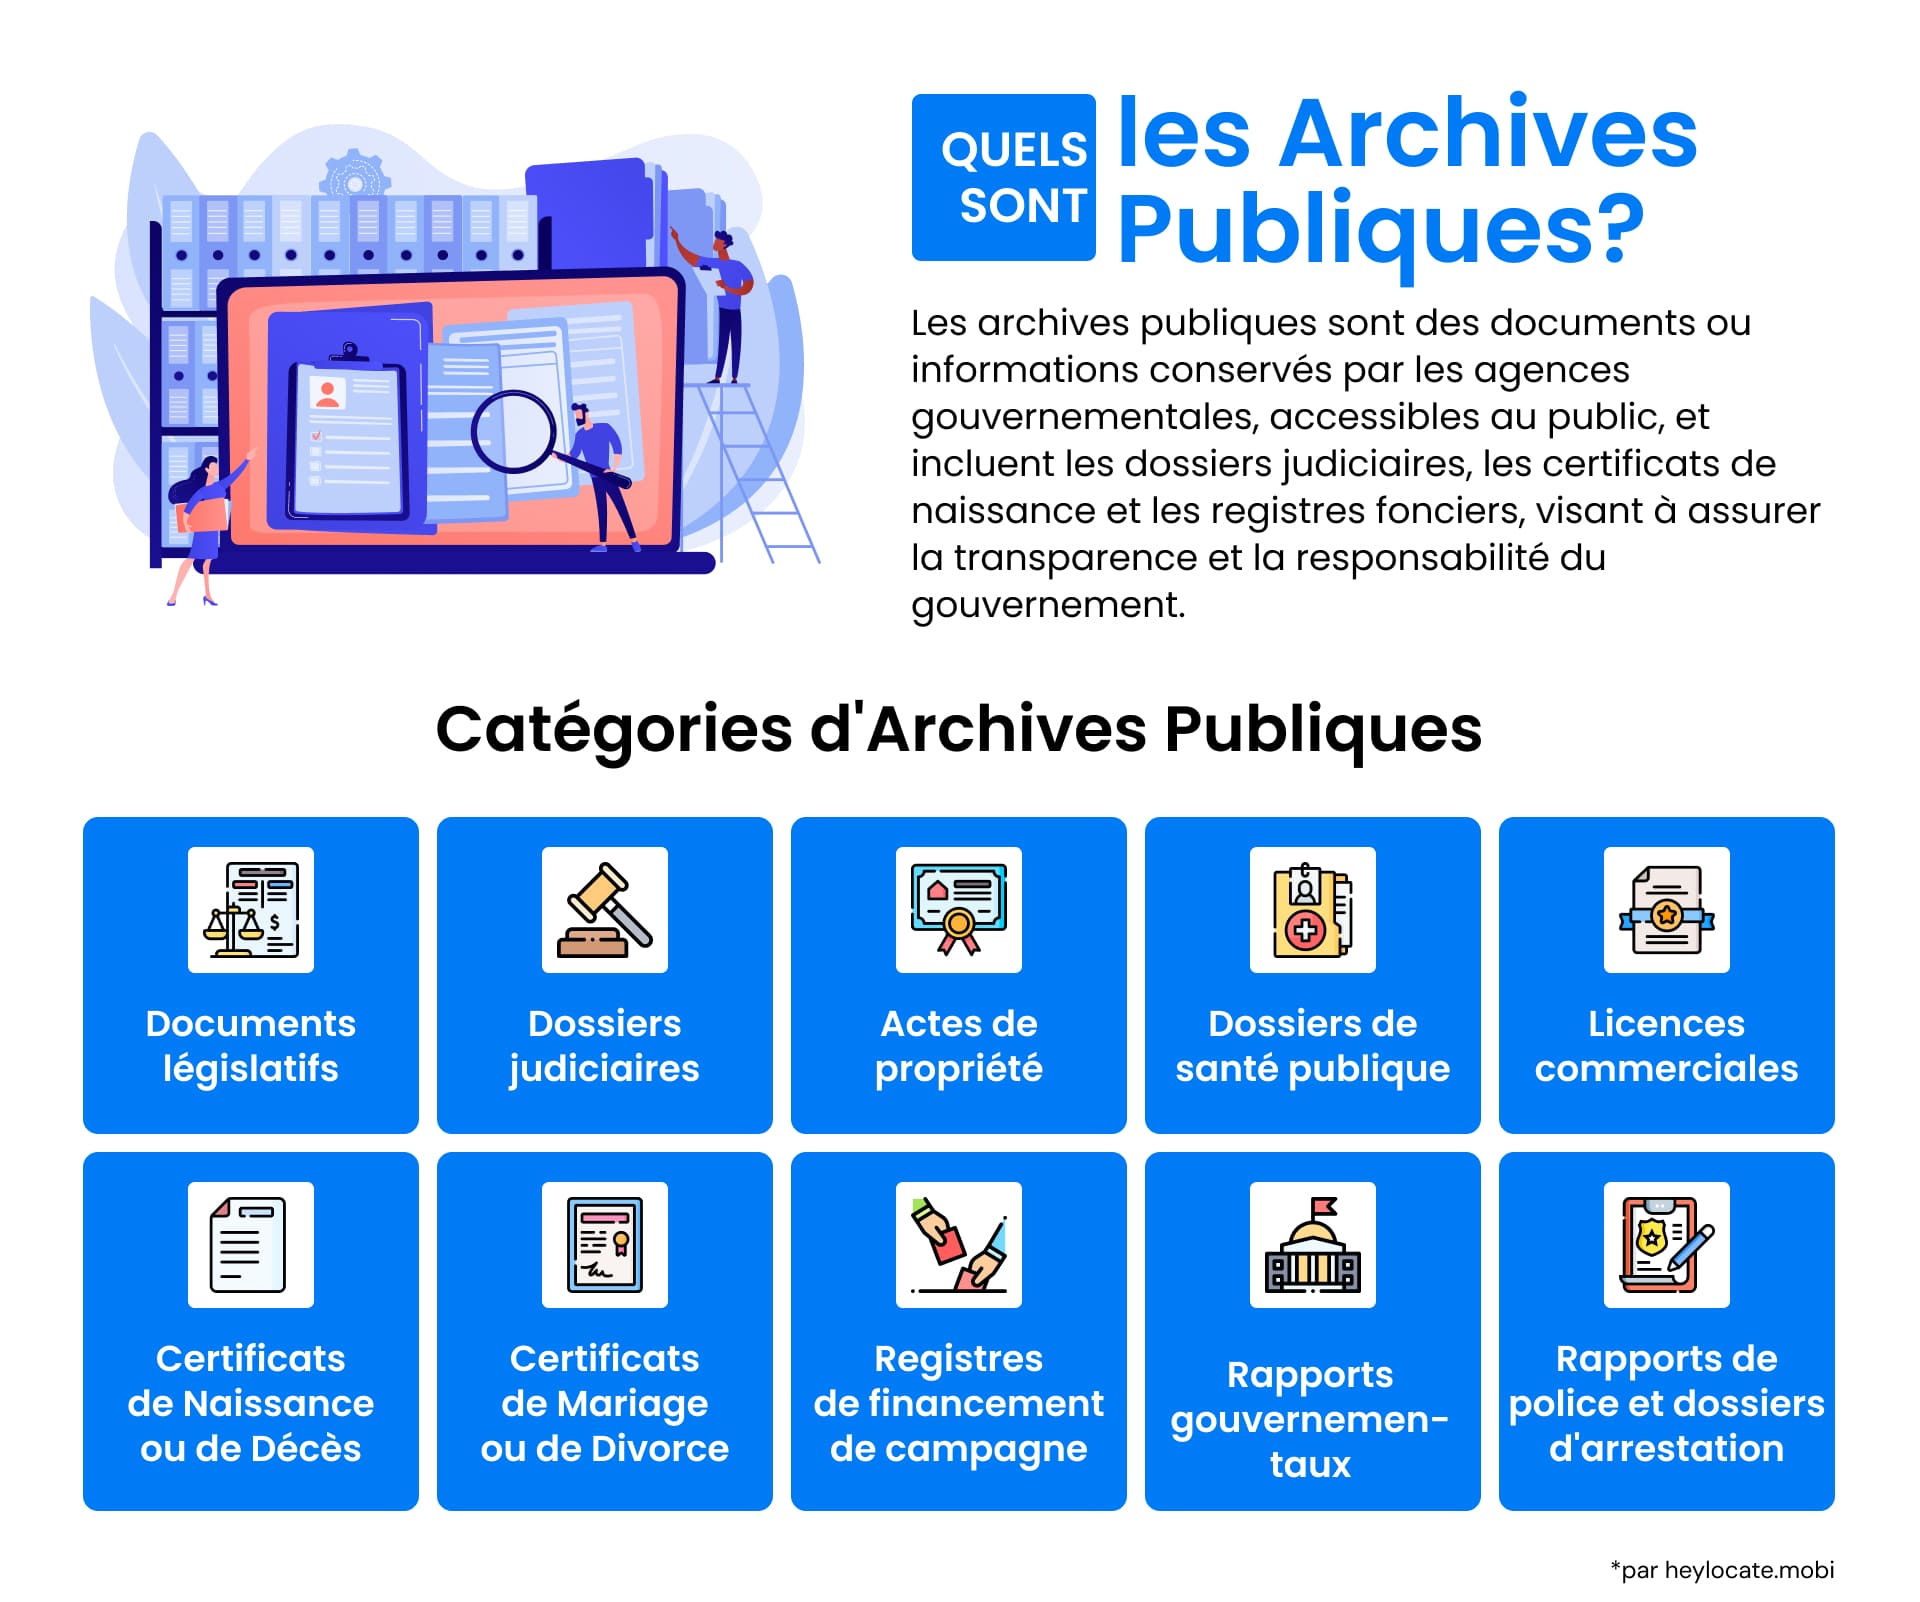 Une infographie détaillant ce que sont les archives publiques, avec des icônes représentant différentes catégories, des documents législatifs aux dossiers médicaux.